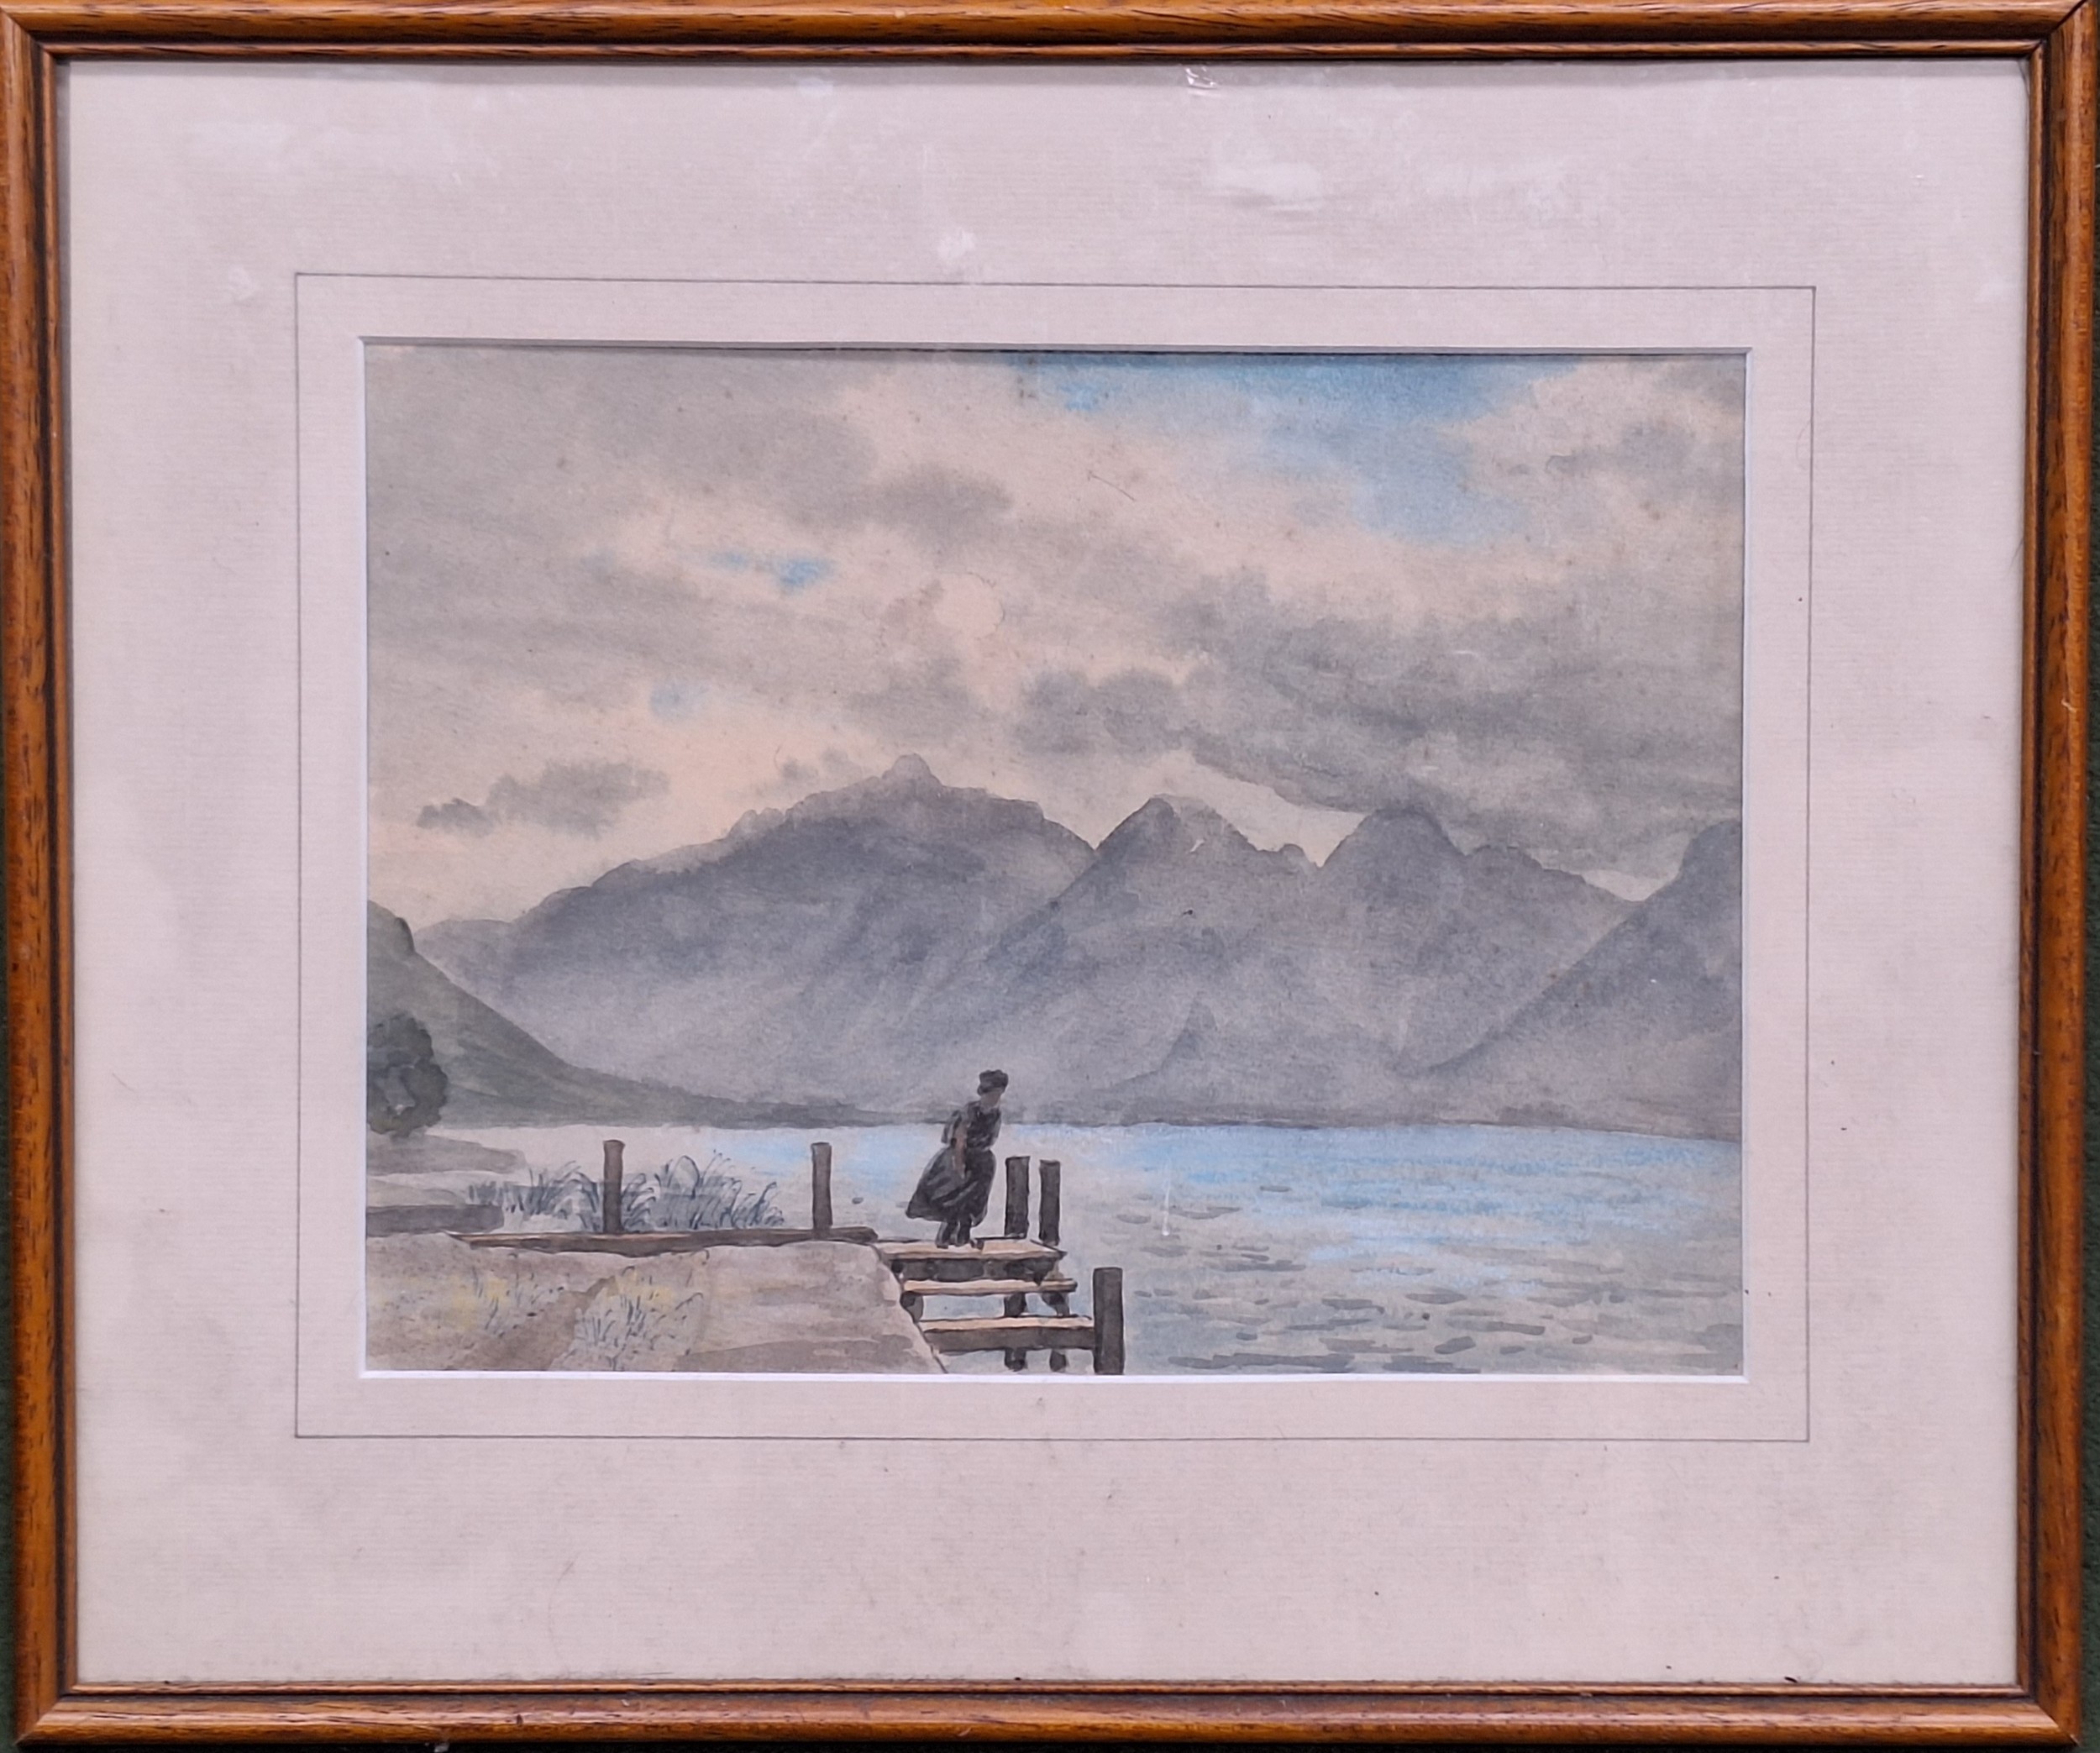 Framed Watercolour depicting a Loch scene. App. 20 x 27cm